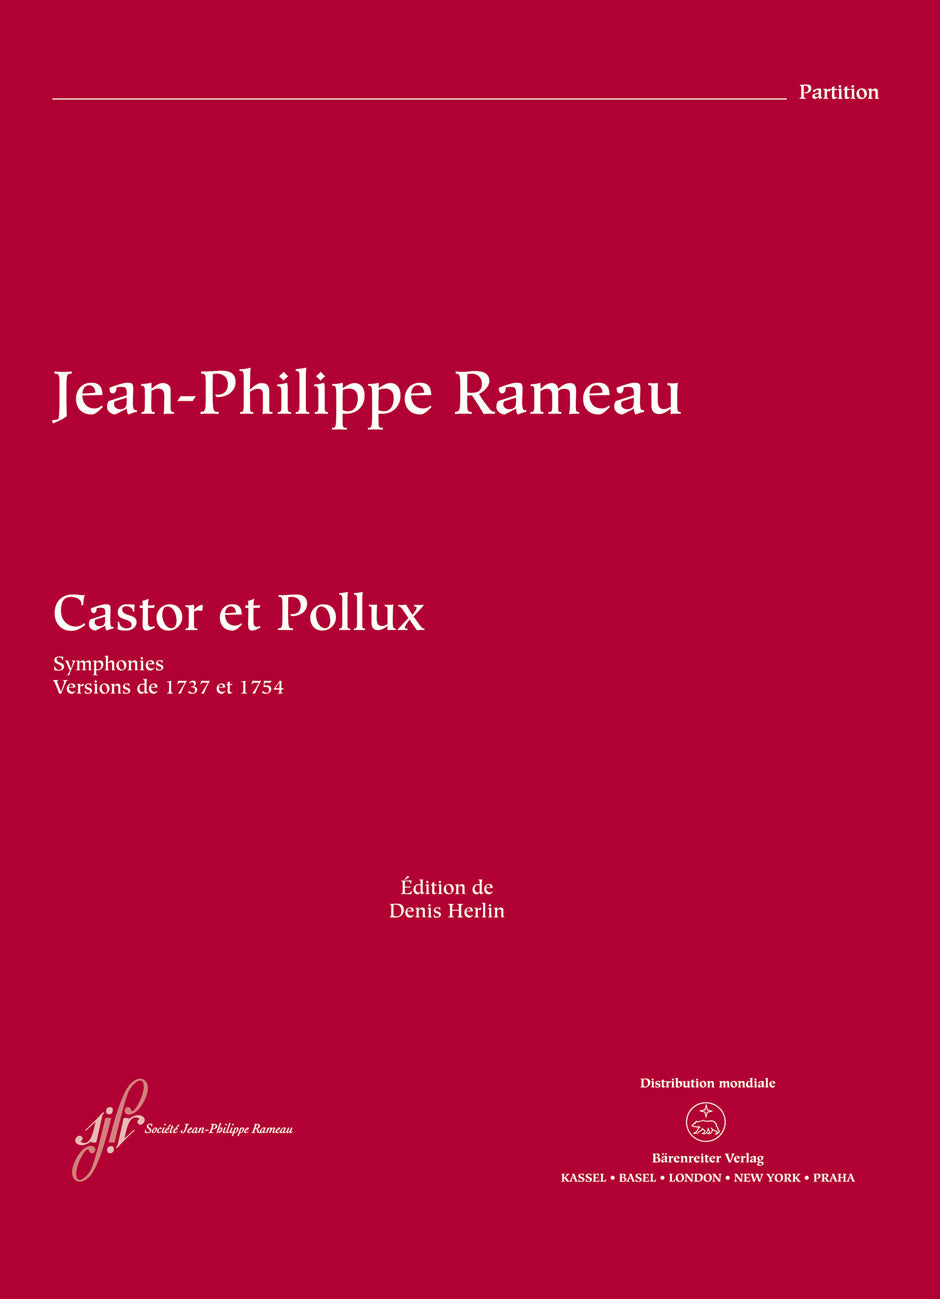 Rameau: Castor et Pollux, RCT 32A-B